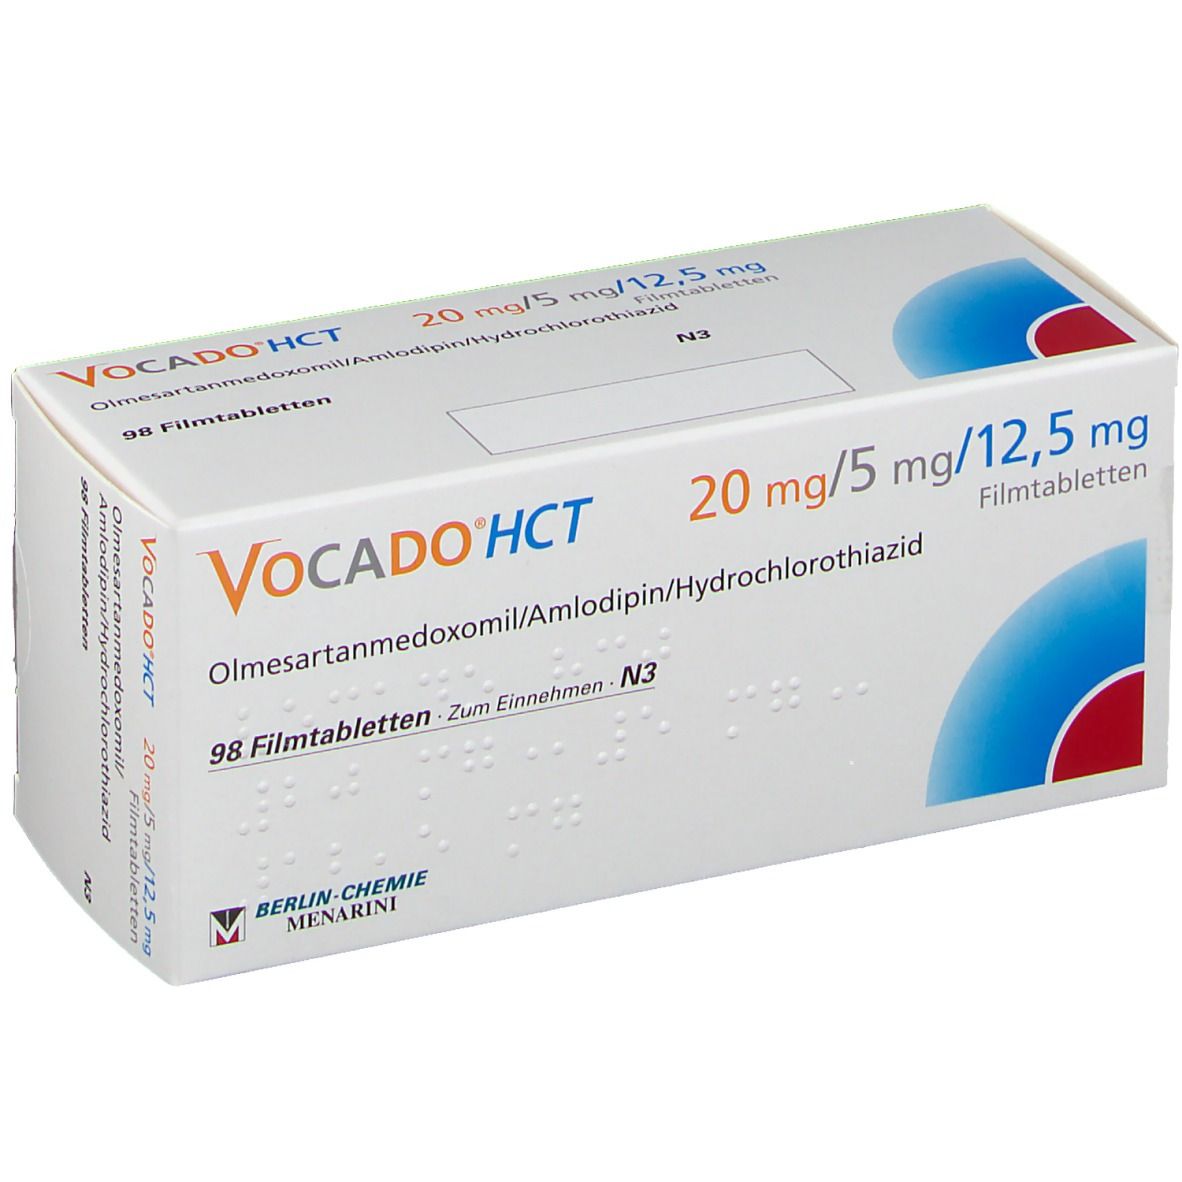 Vocado®HCT 20 mg/5 mg/12,5 mg